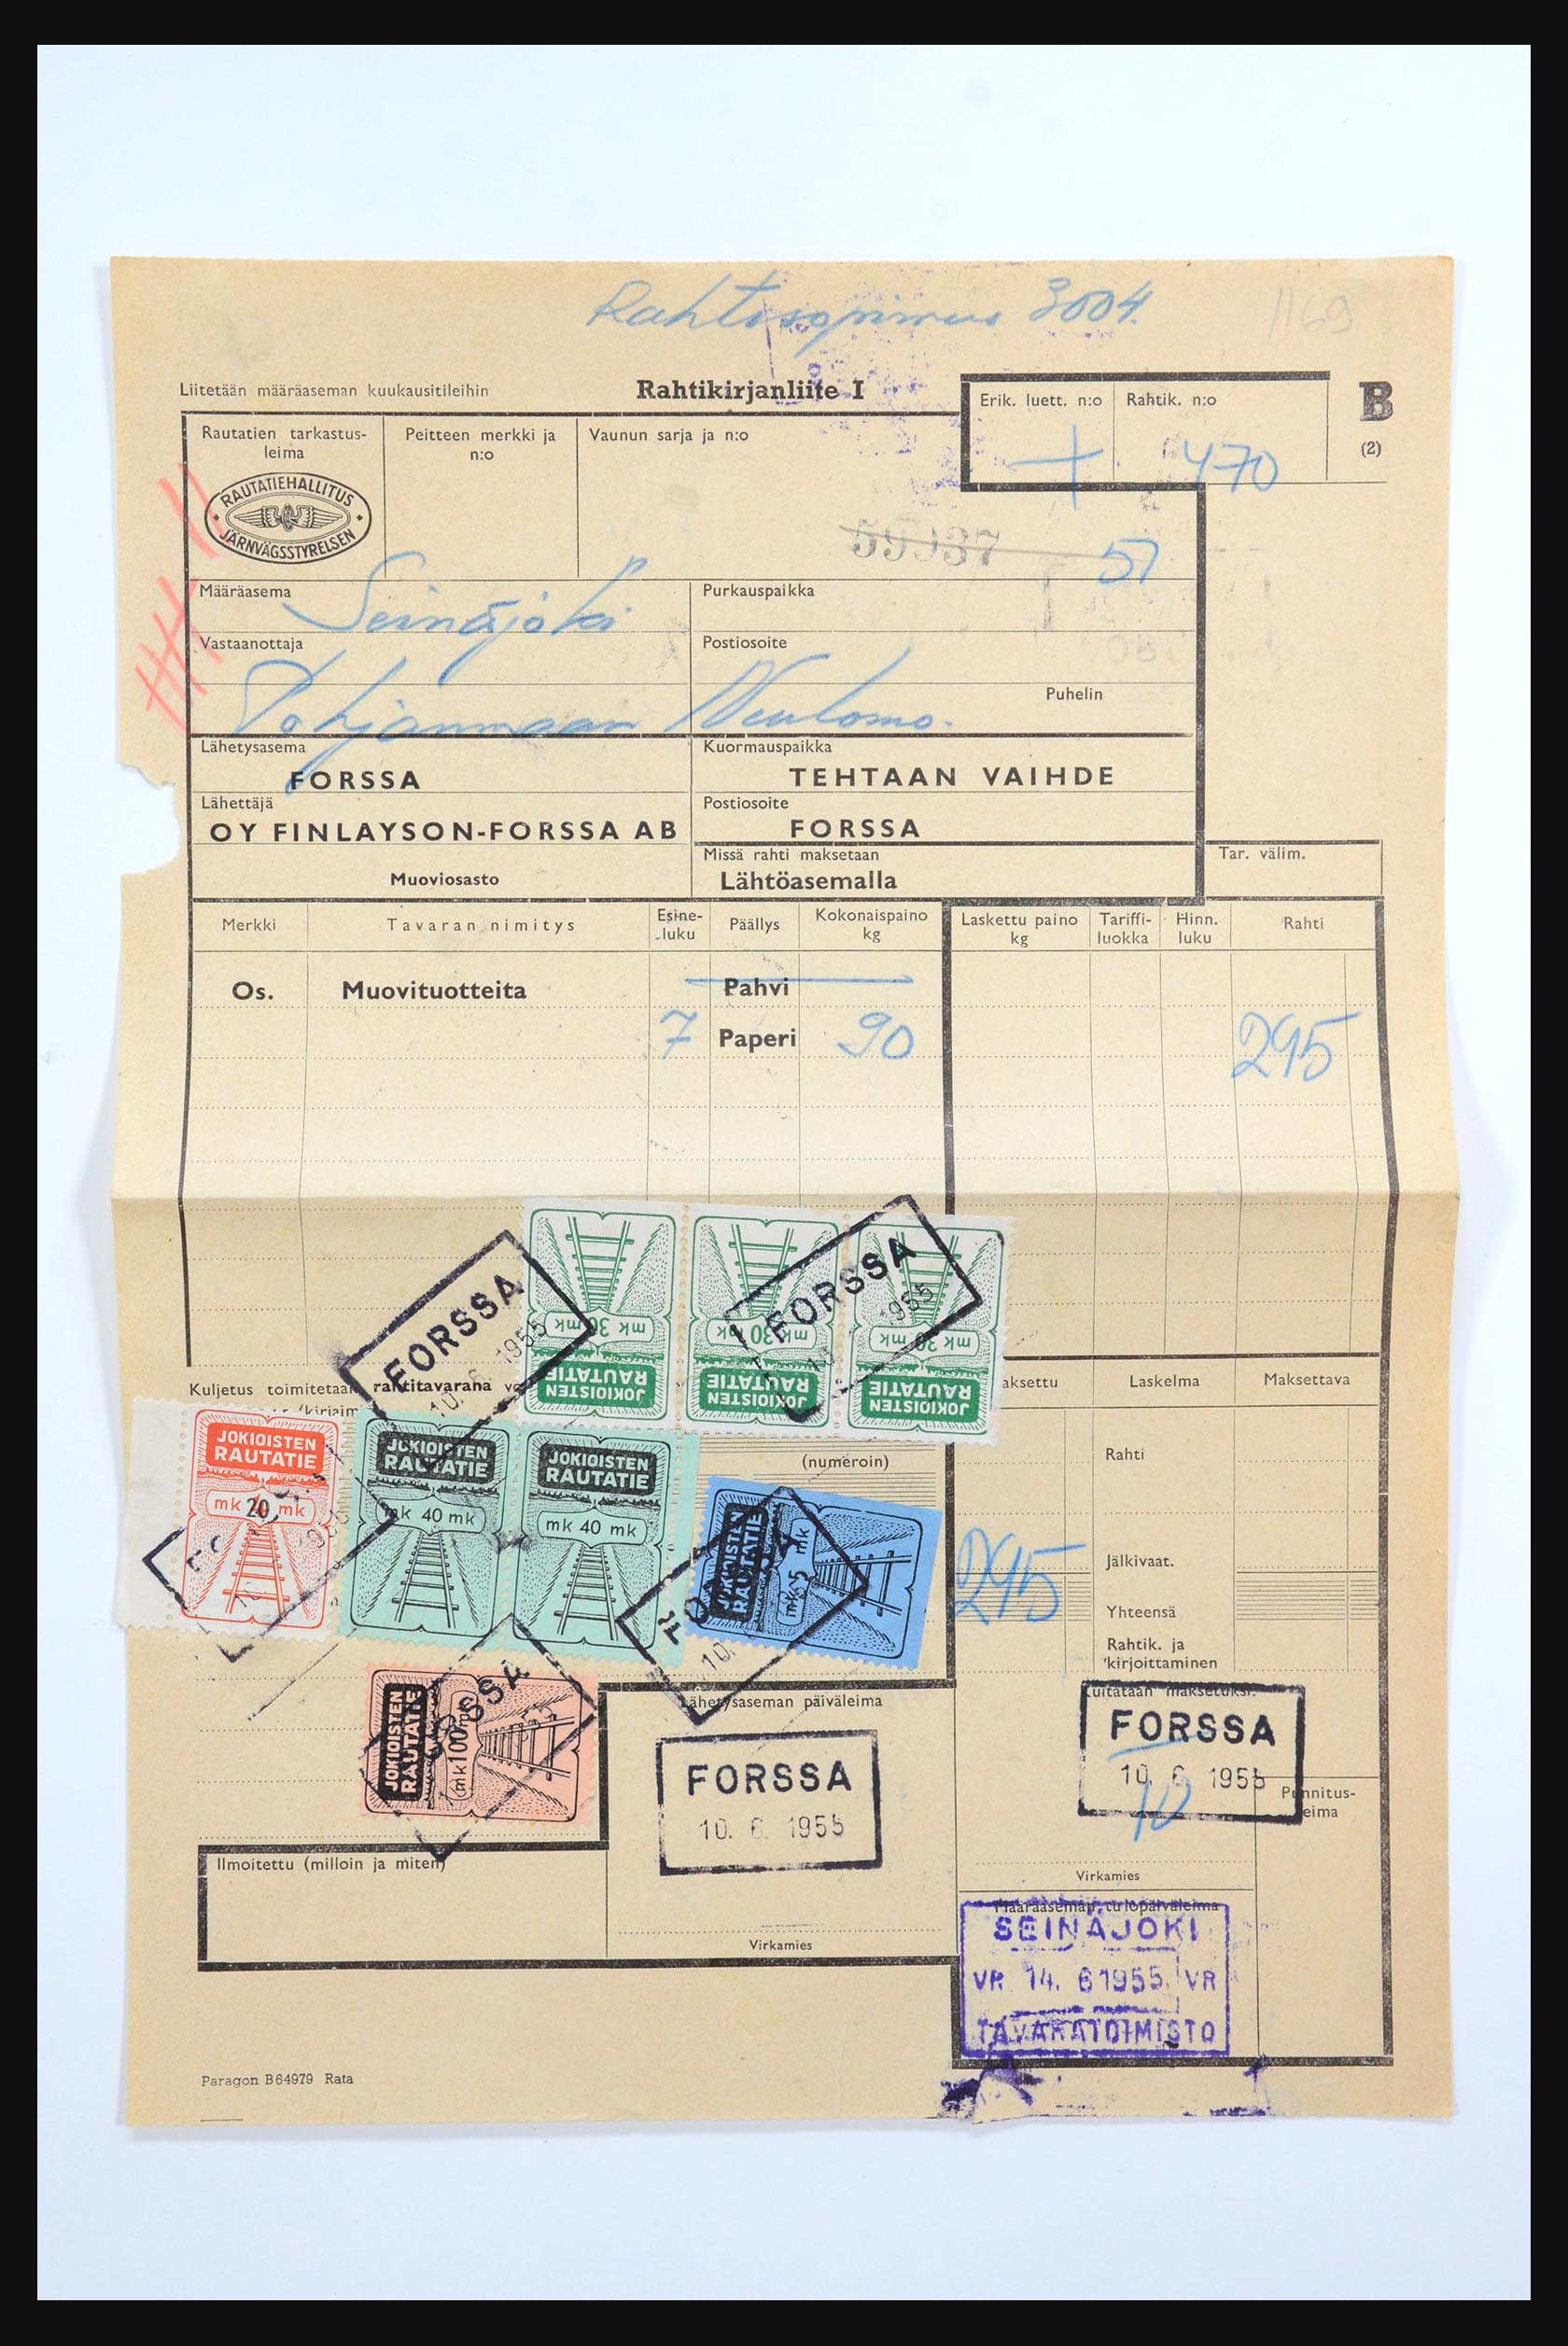 31658 131 - 31658 Finland brieven 1833-1960.